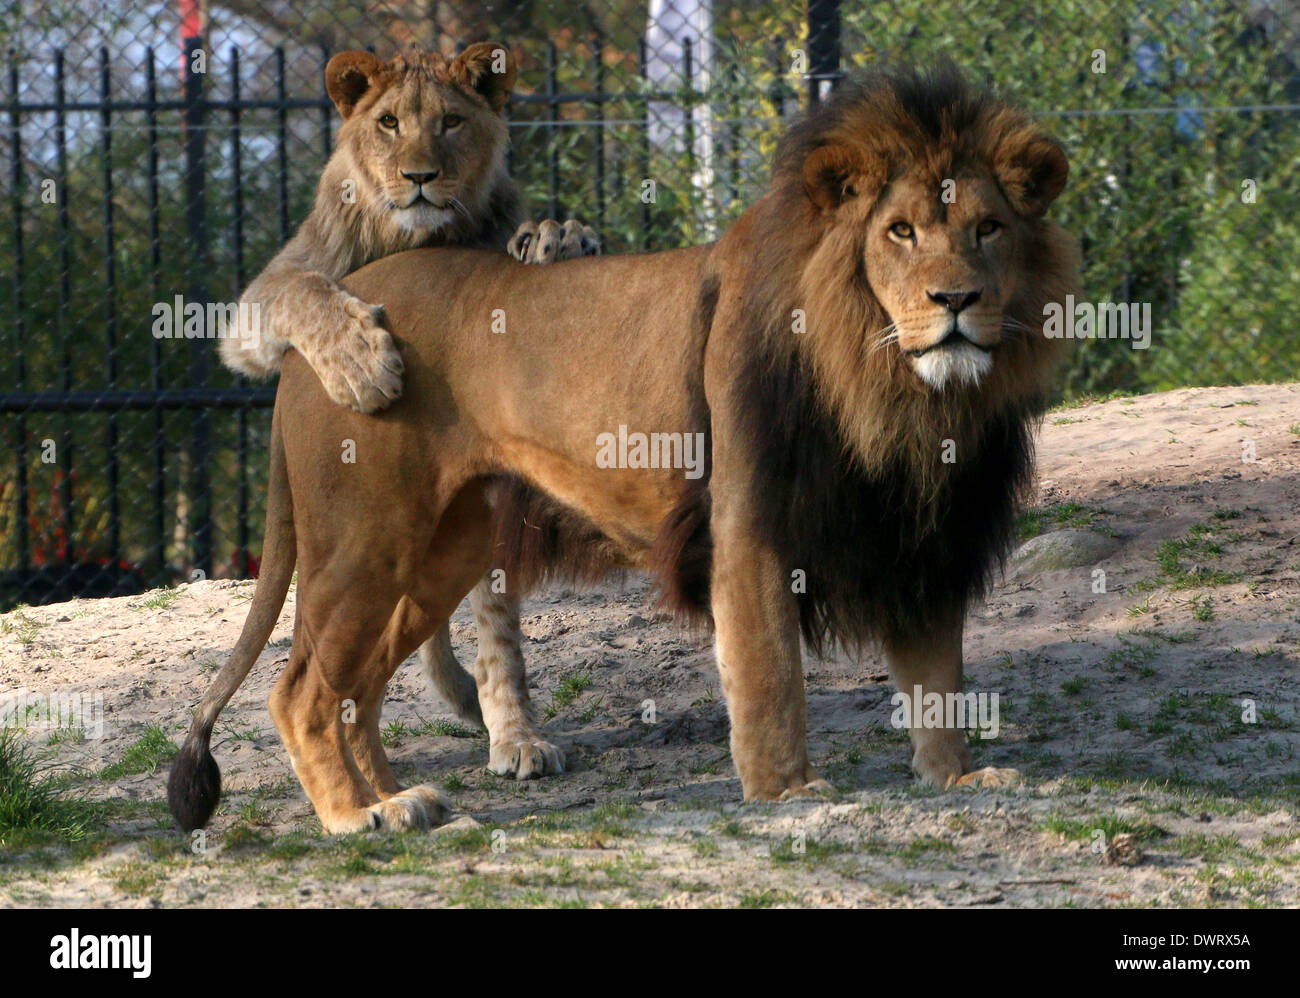 Close-up una madura león (Panthera leo) y un cachorro juguetón en el parque zoológico de ajuste Foto de stock